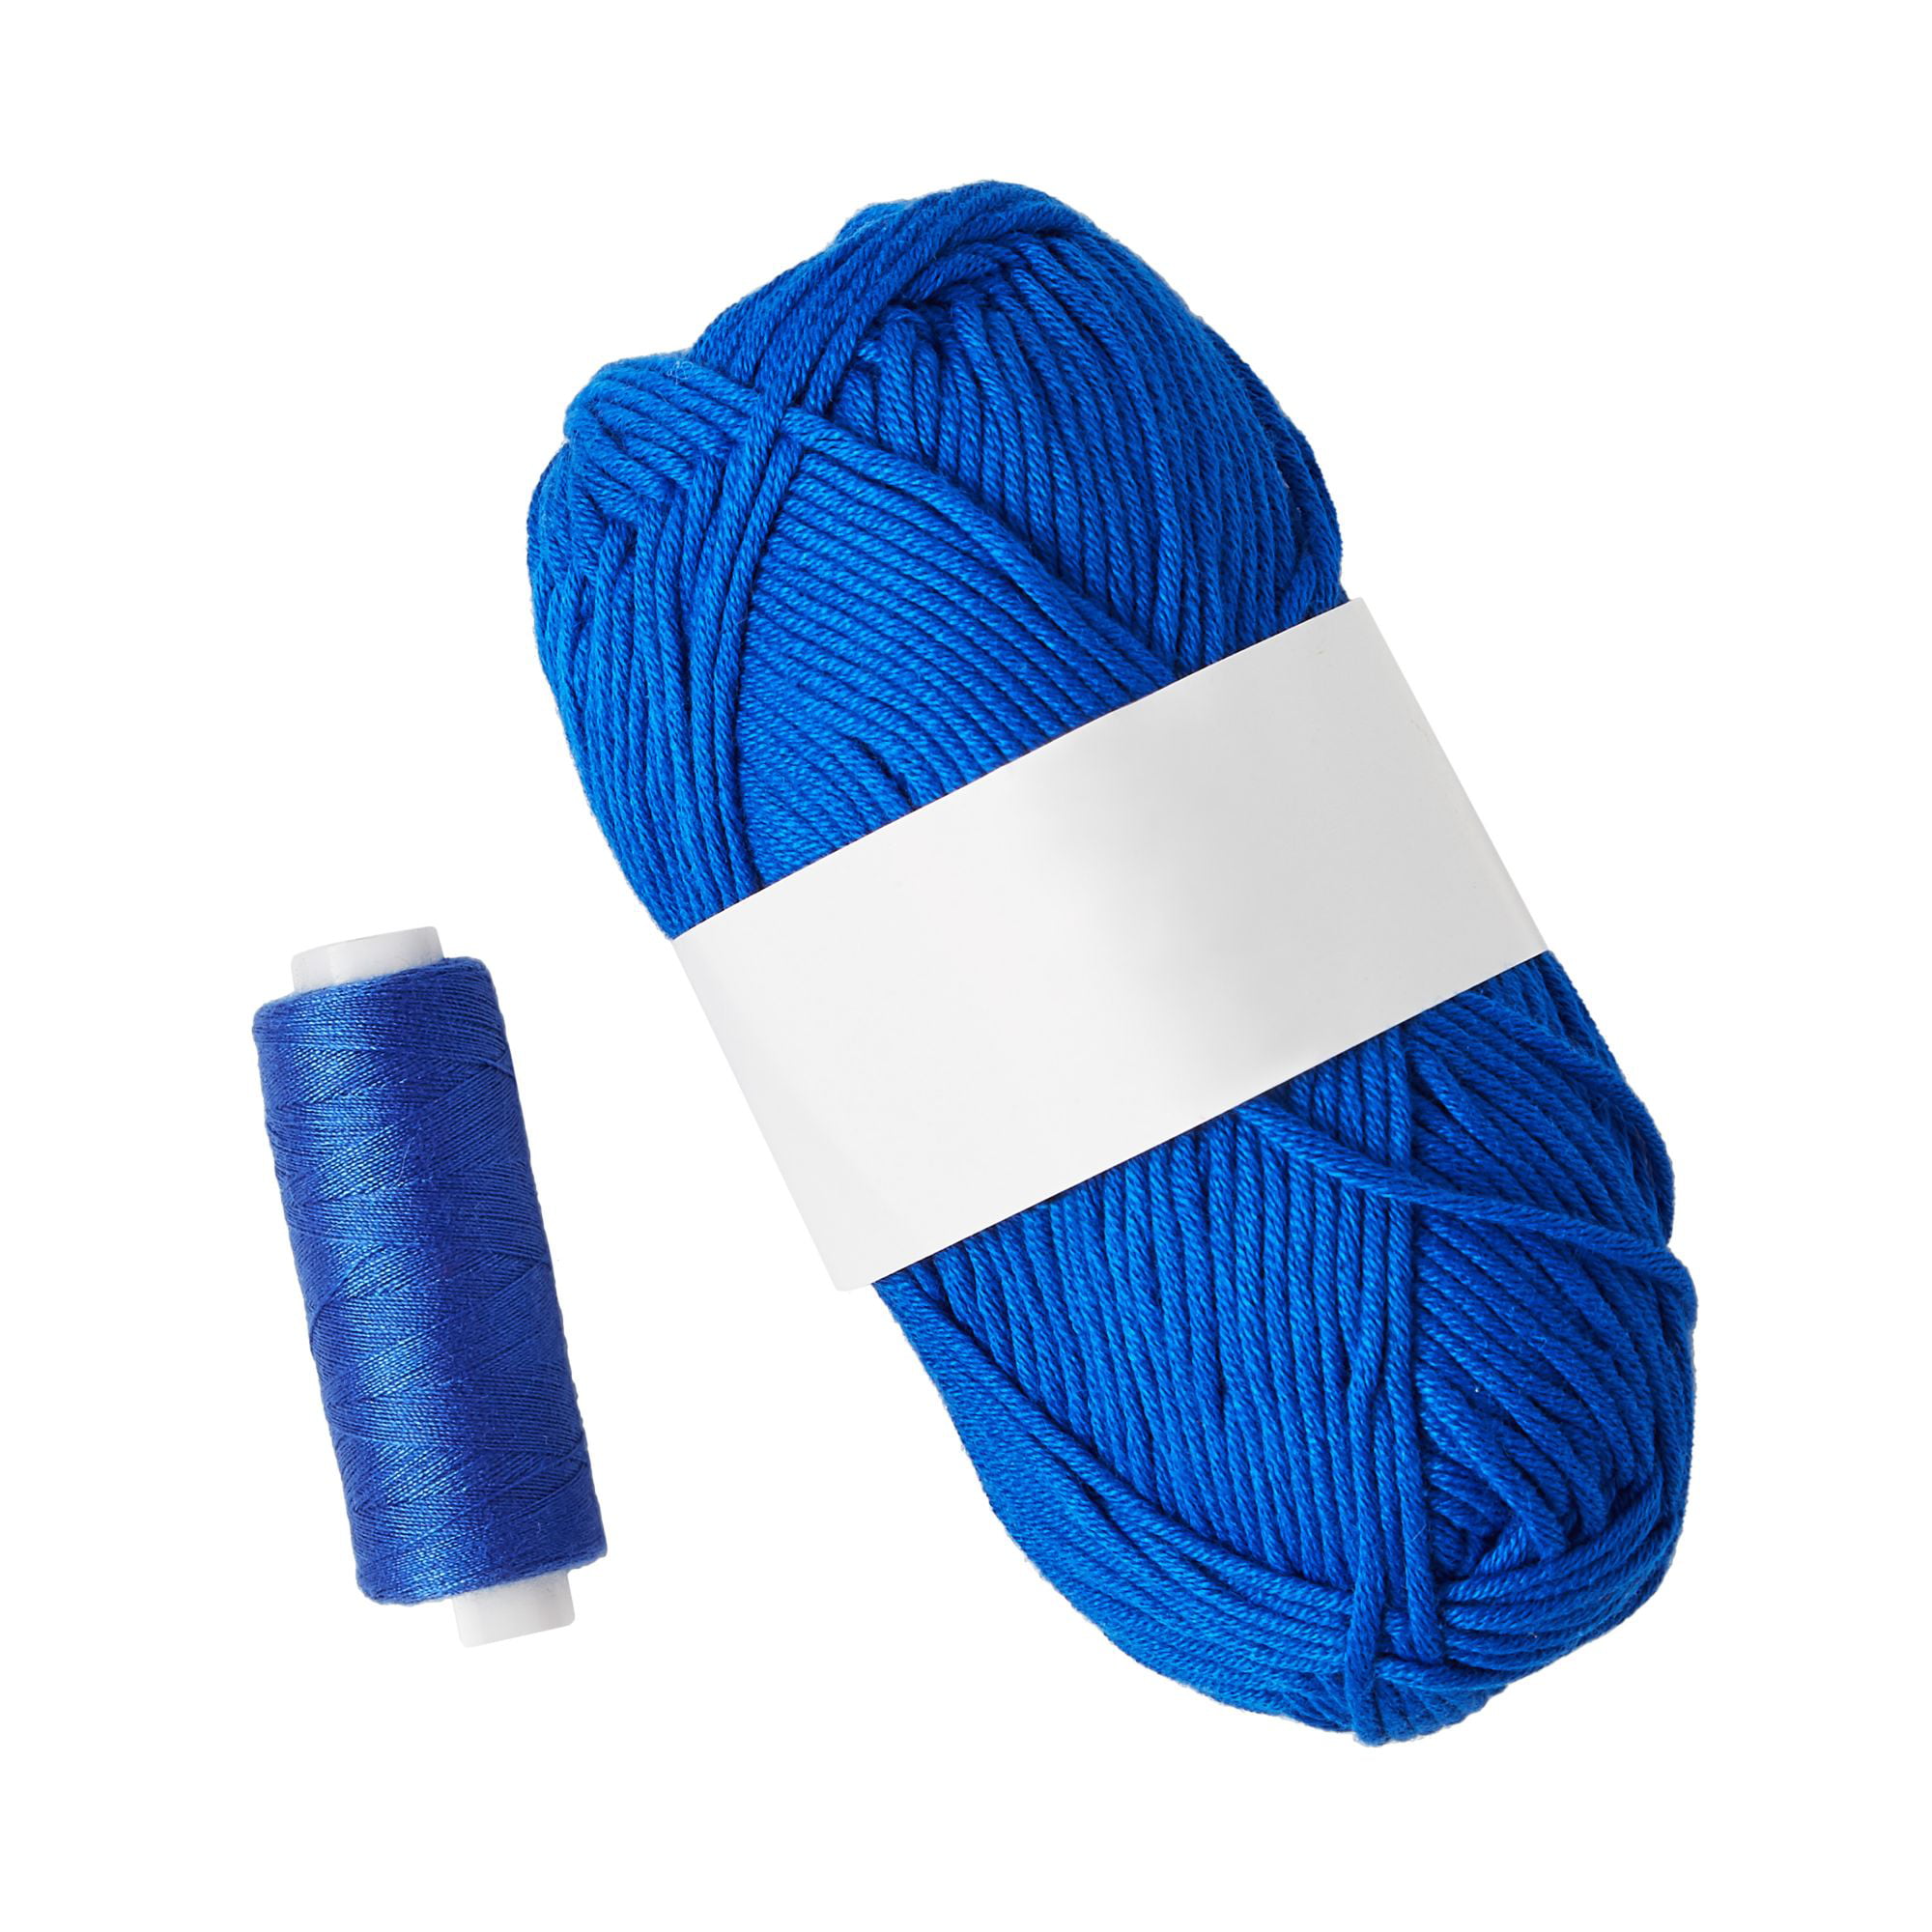 Yarn Break - Easy DIY Tea Towels – Mama In A Stitch